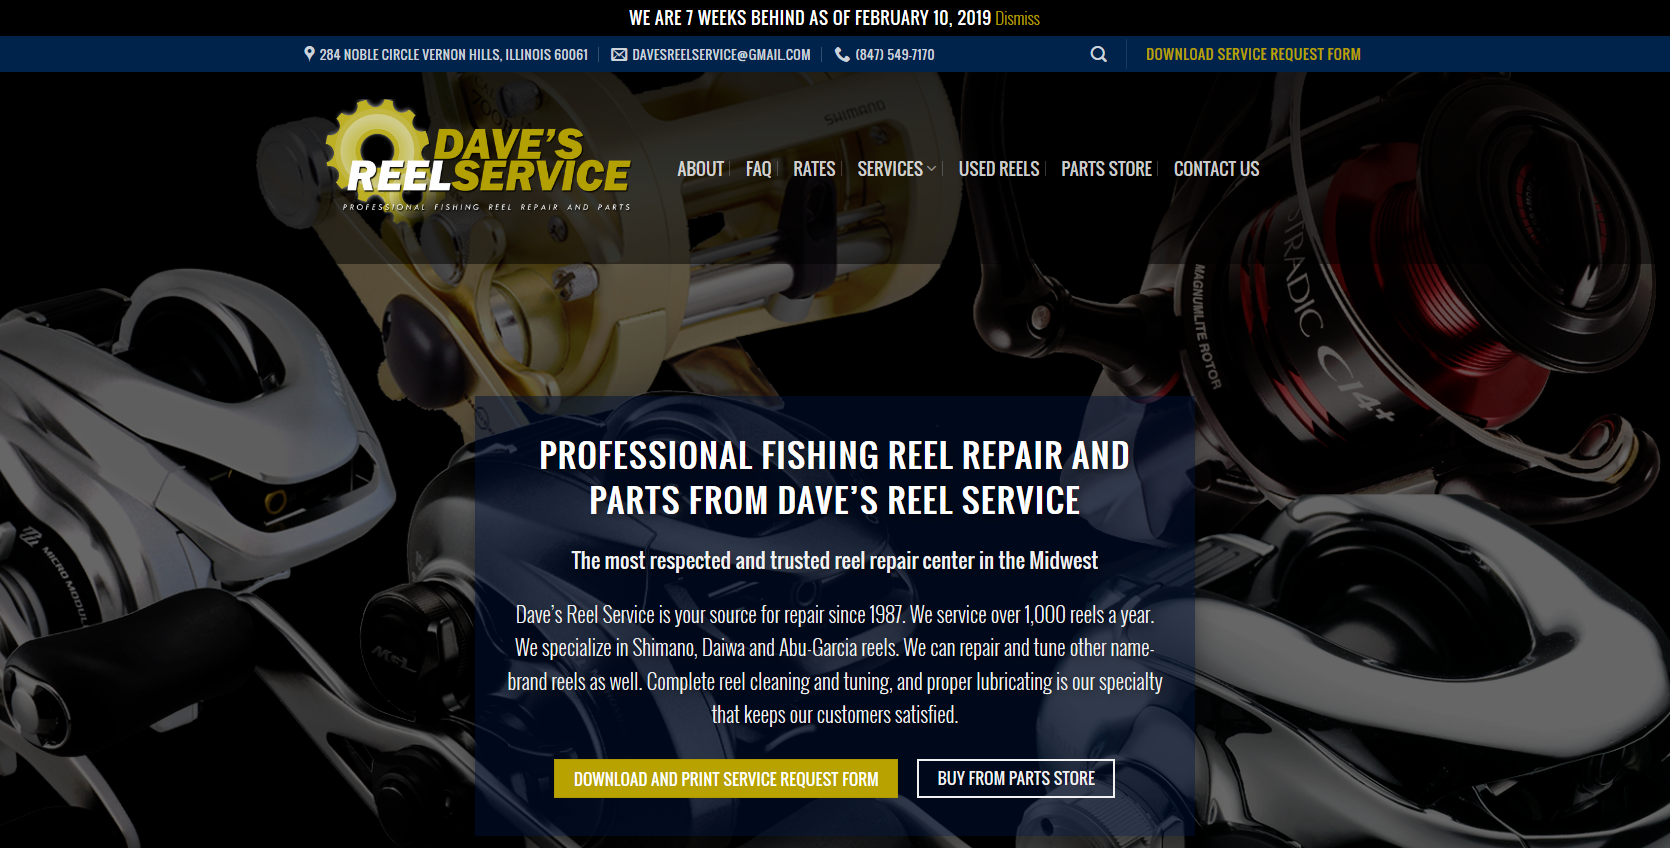 Daiwa Fishing Reel Parts & Repair